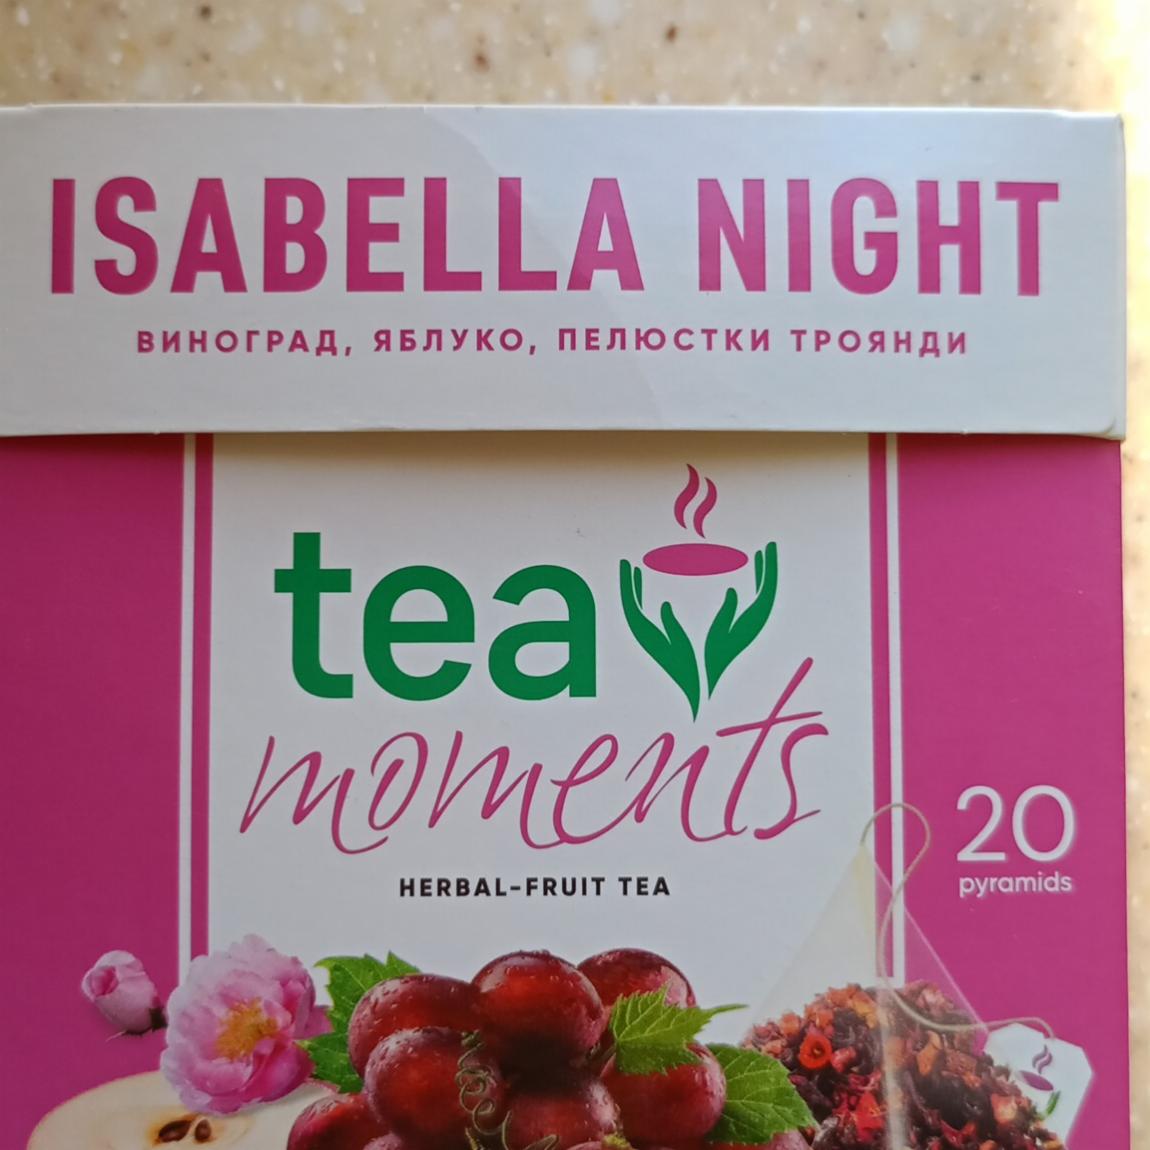 Фото - чай виноград-яблоко-пелюстки троянди Isabella Night